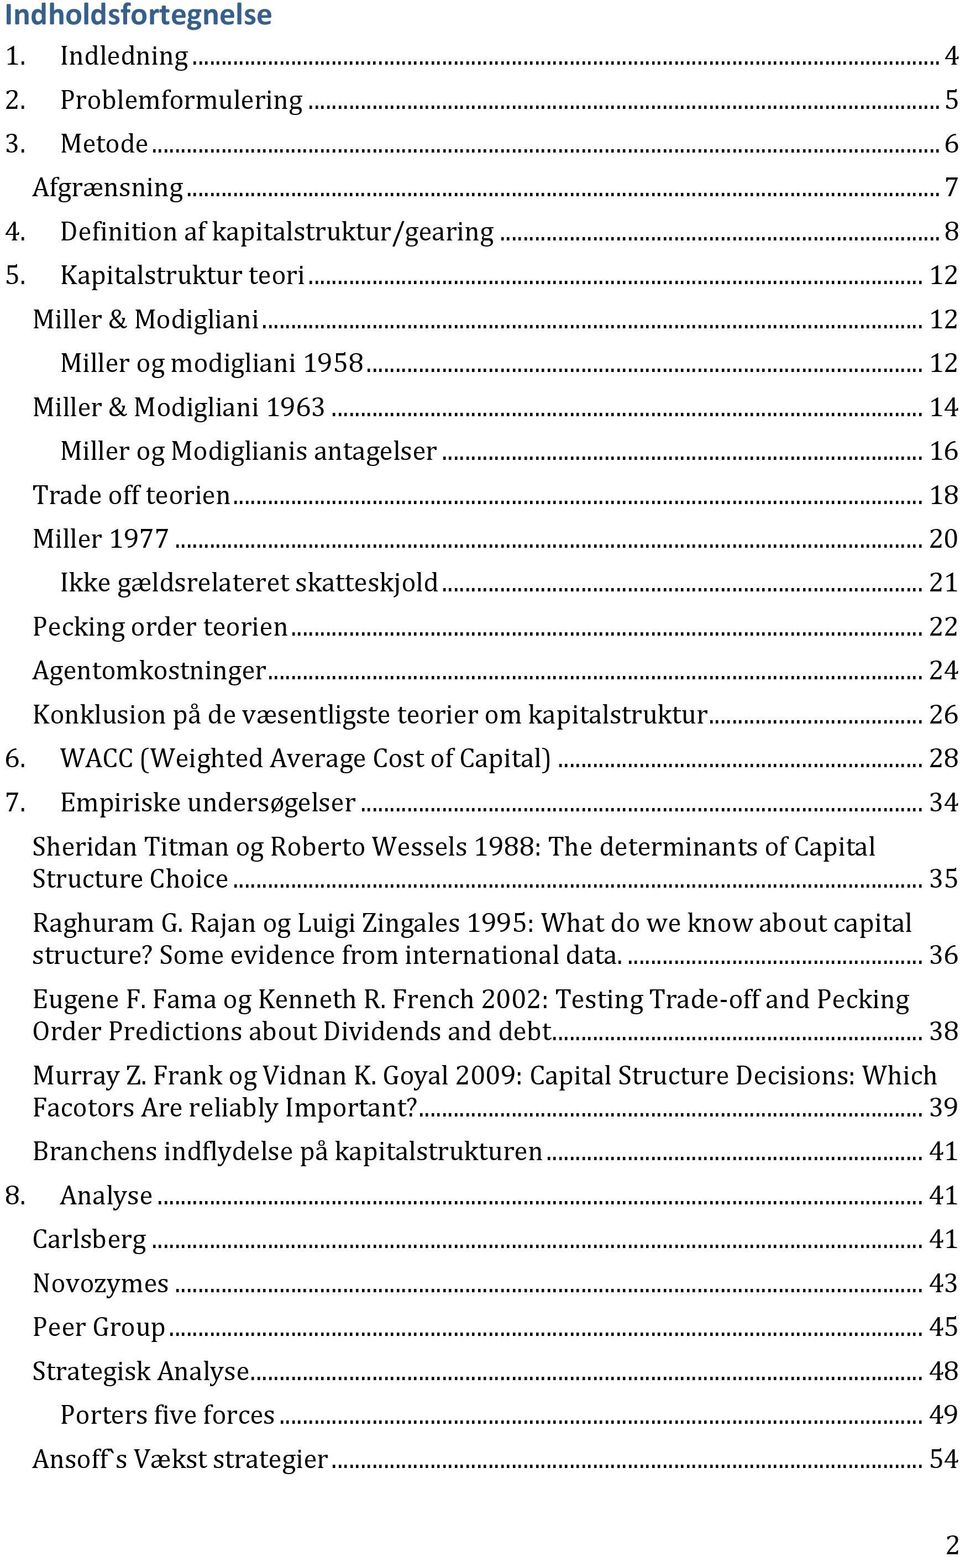 .. 21 Pecking order teorien... 22 Agentomkostninger... 24 Konklusion på de væsentligste teorier om kapitalstruktur... 26 6. WACC (Weighted Average Cost of Capital)... 28 7. Empiriske undersøgelser.